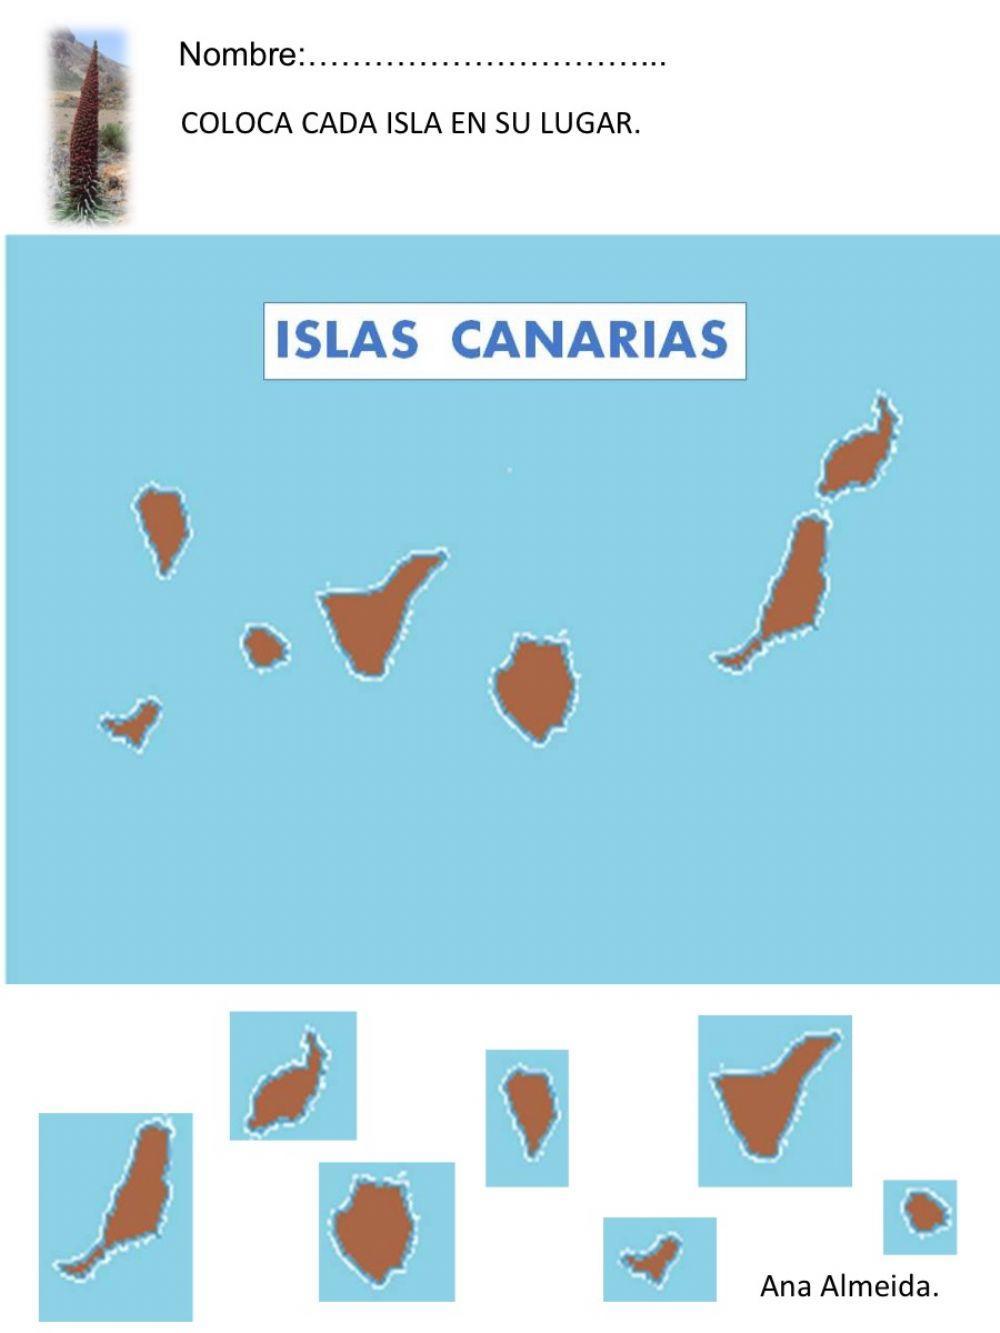 Las islas Canarias